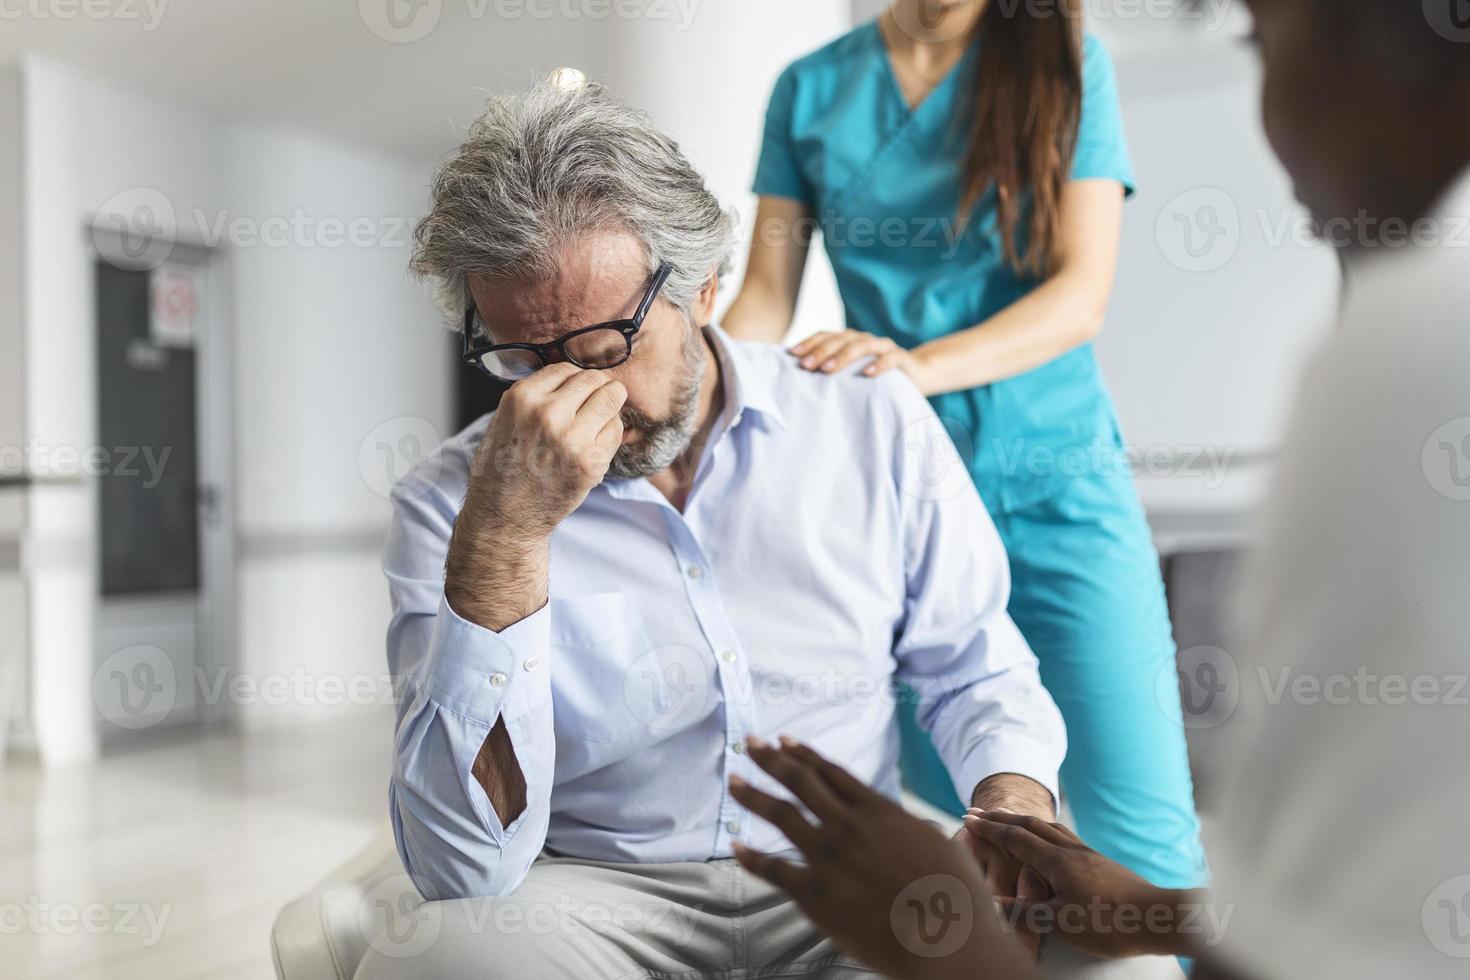 médico consolando al hombre molesto en la sala de espera del hospital. paciente que recibe malas noticias, está desesperado y llorando, el médico apoya y conforta a su paciente con simpatía. foto